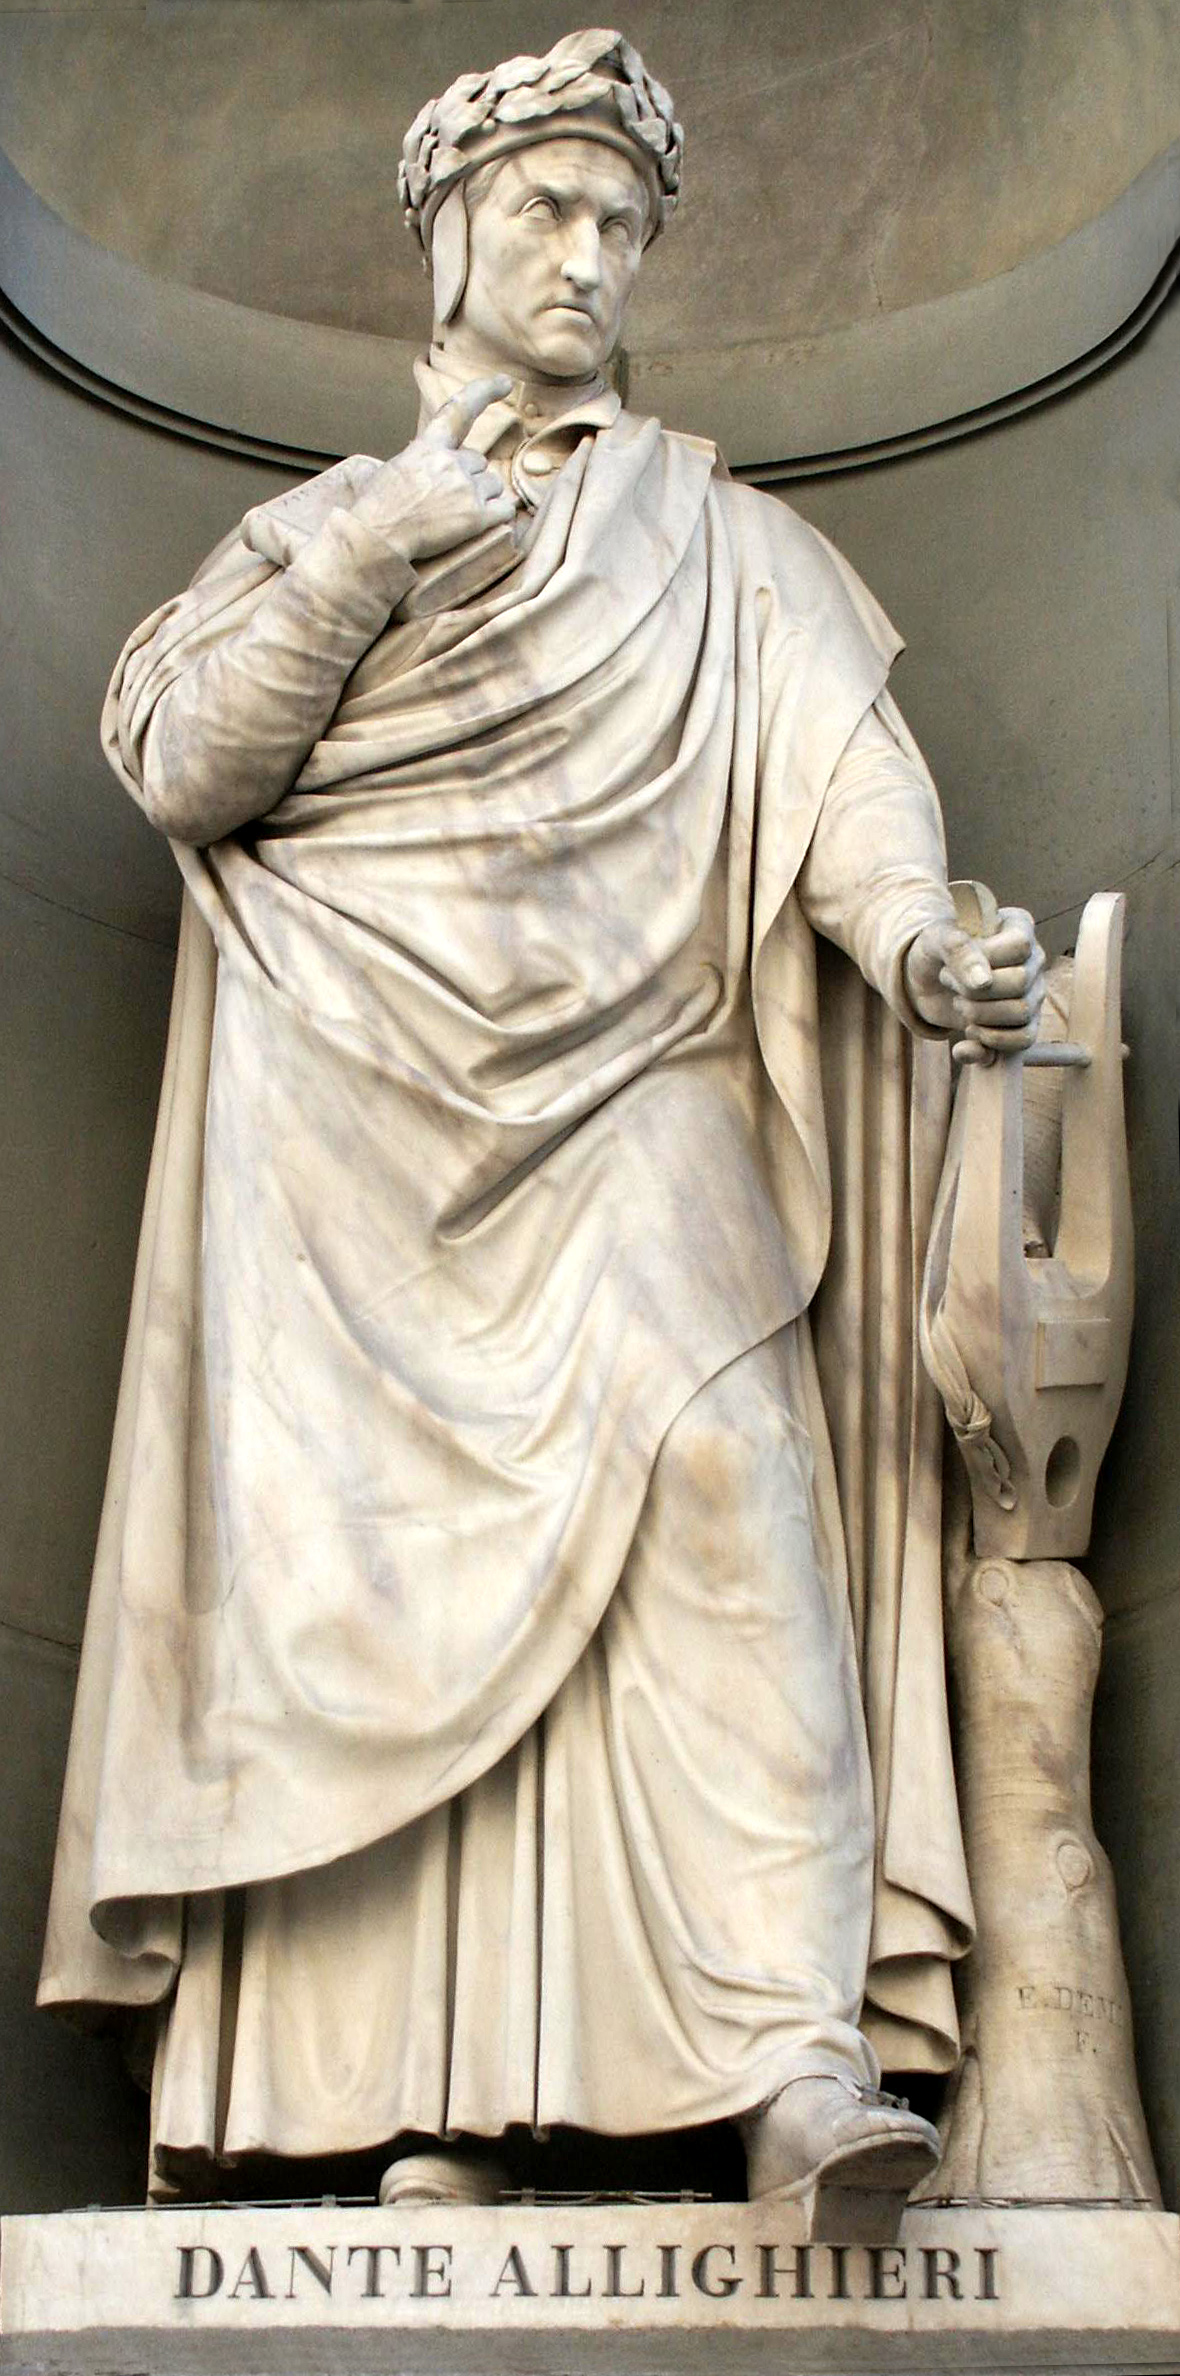 Dante Alighieri, "le père de langue italienne" a contribué aux premières idées d'une Europe unie.